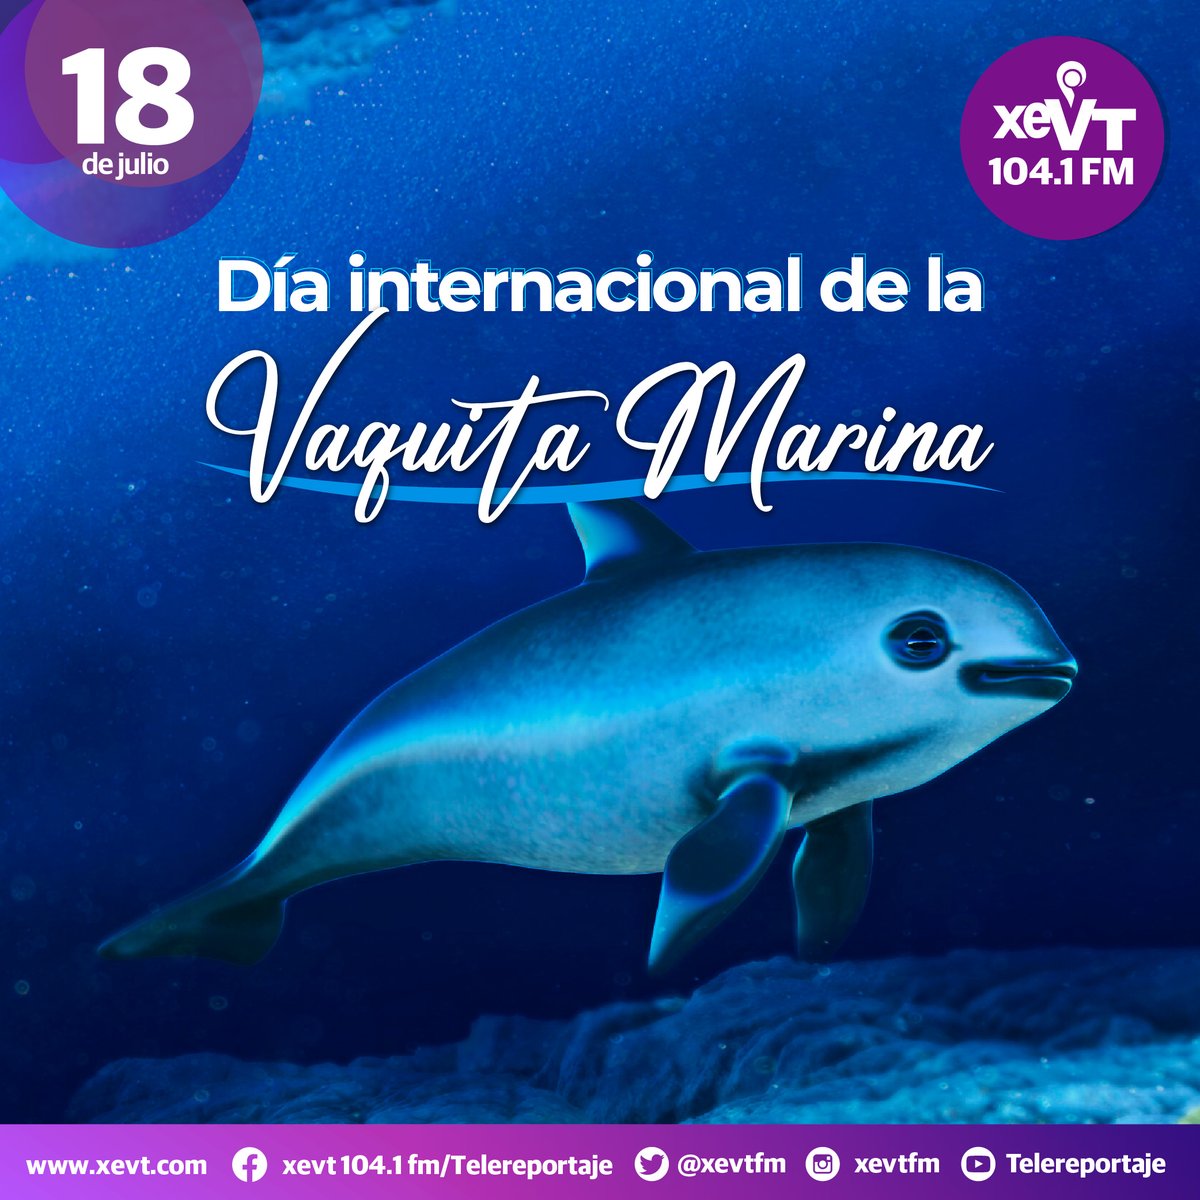 #18DeJulio  | Día Internacional de la Vaquita Marina

#LasEfemérides📆 #SeñalQueUne🔗 #XEVT 🖲️